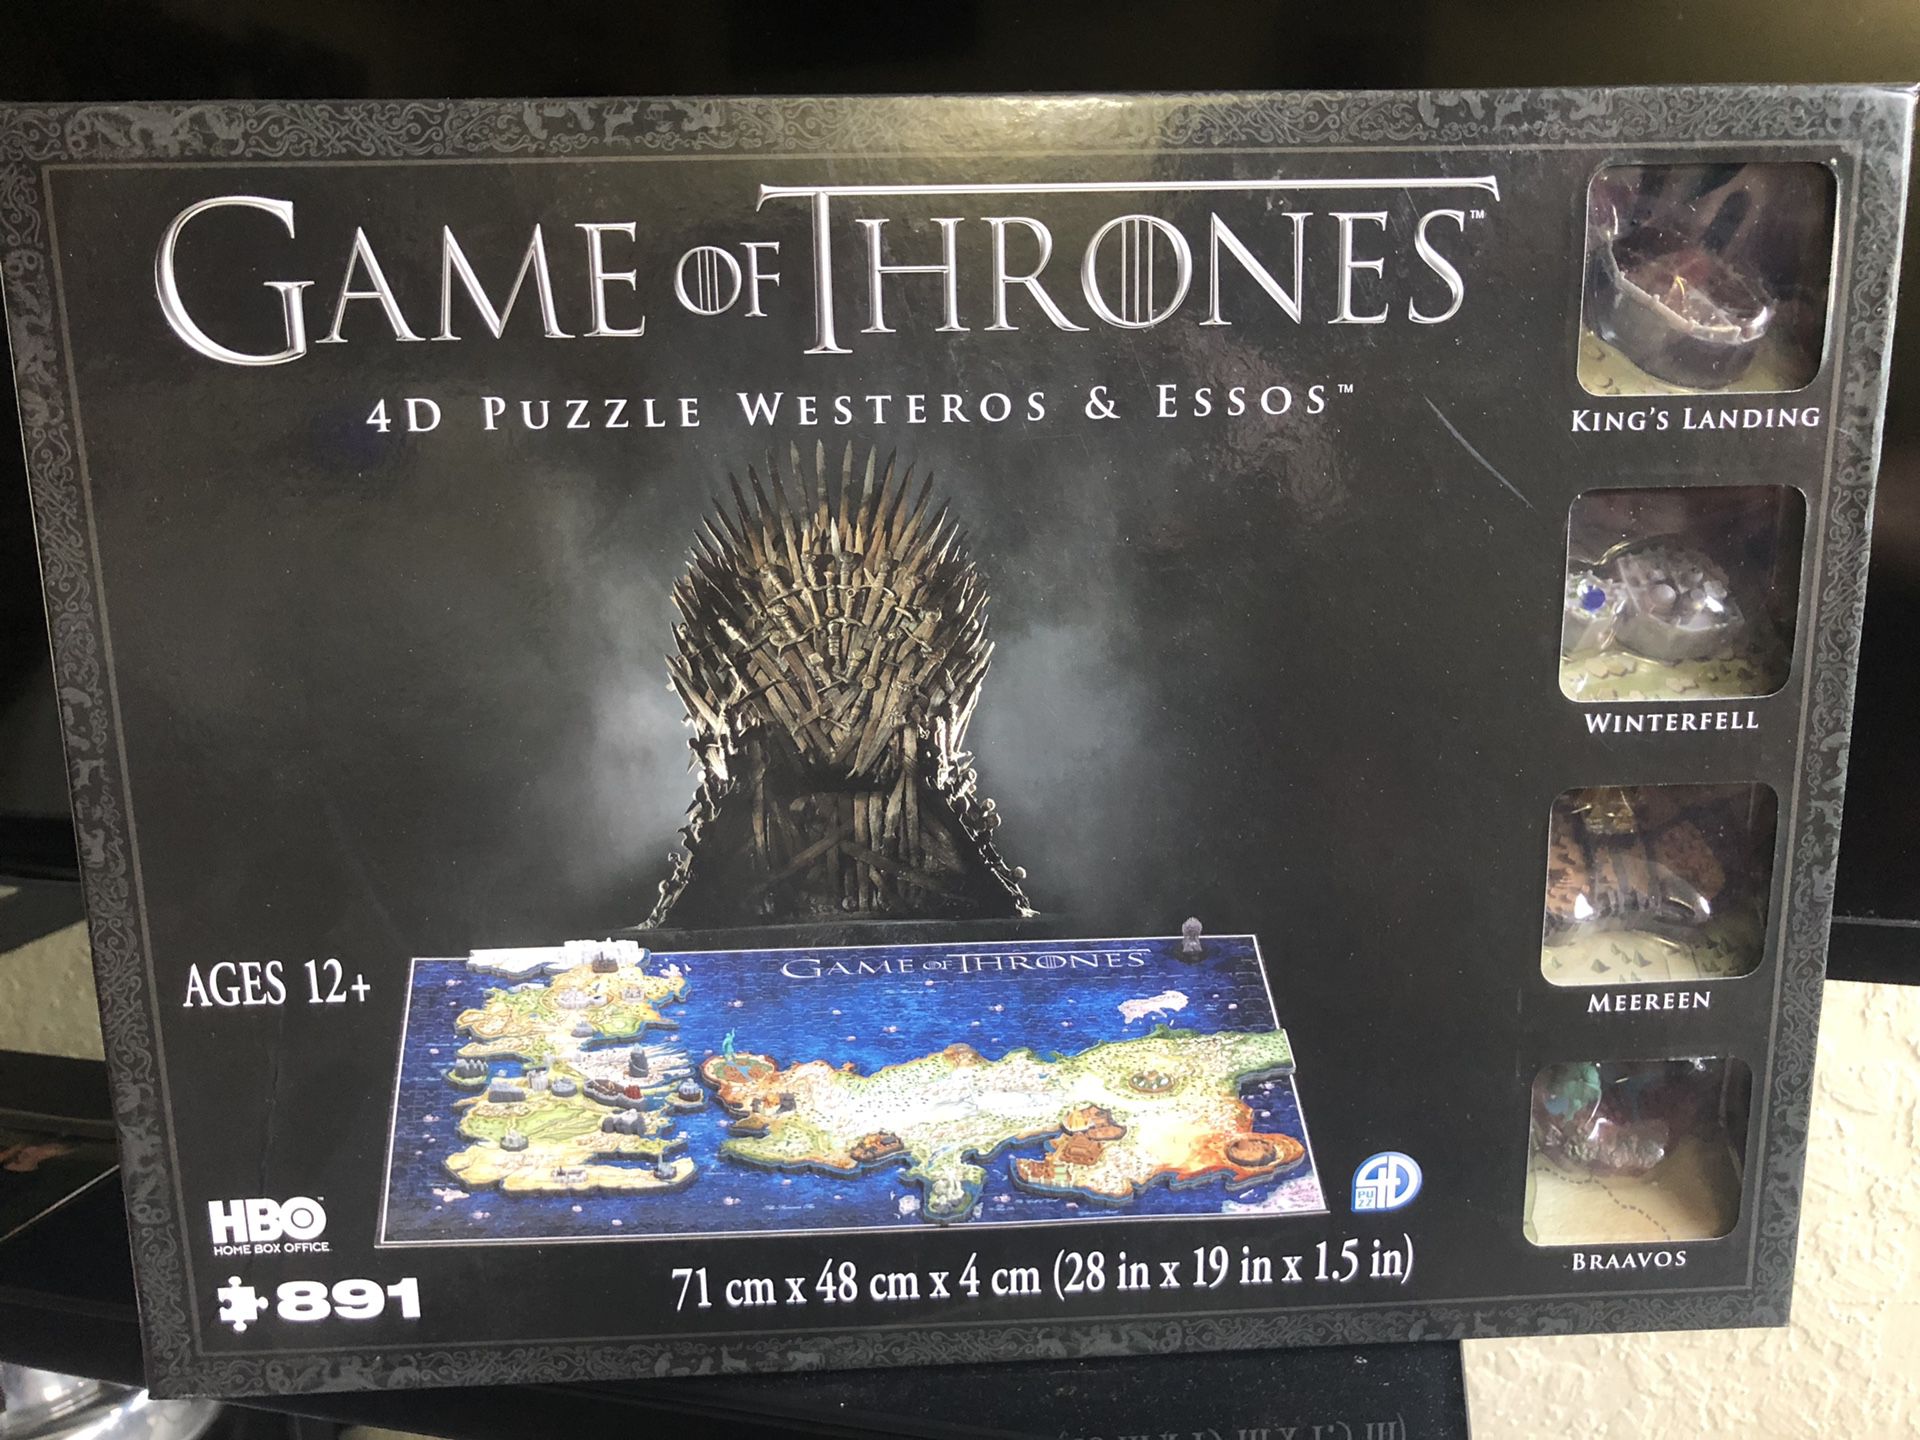 Game of Thrones 4D Puzzle Westeros & Essos